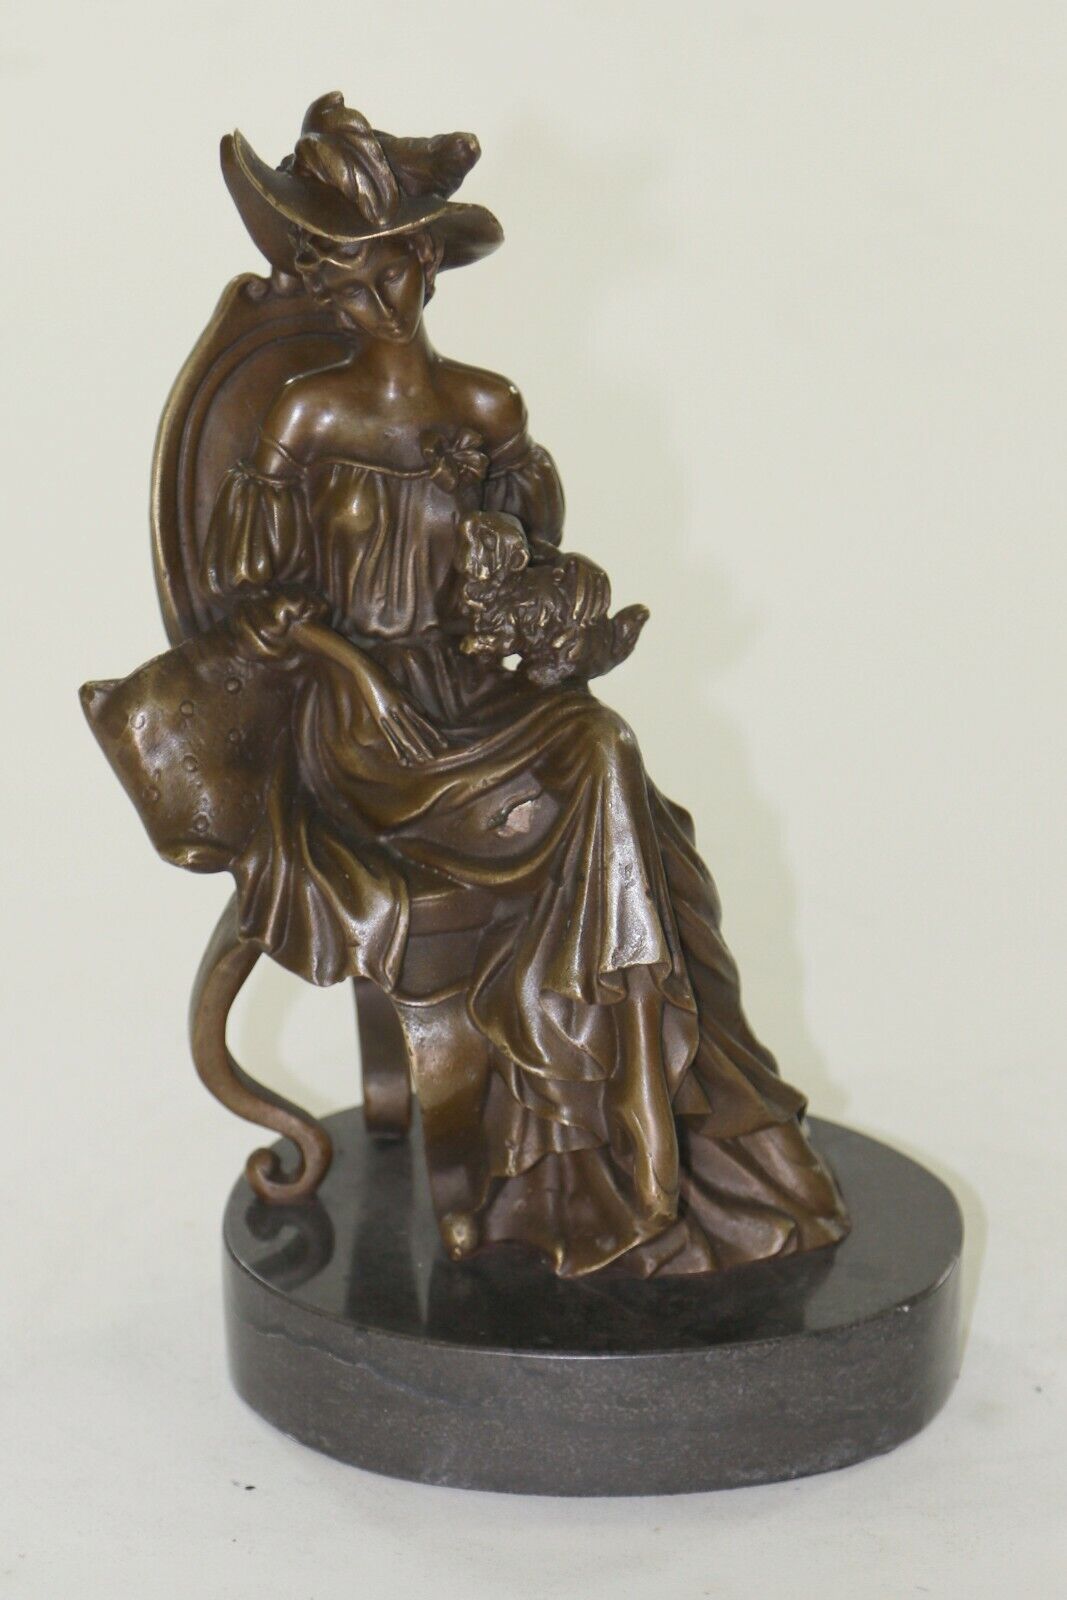 Art Deco/Nouveau Gorgeous Woman with Small Dog Bronze Sculpture Statue Figure